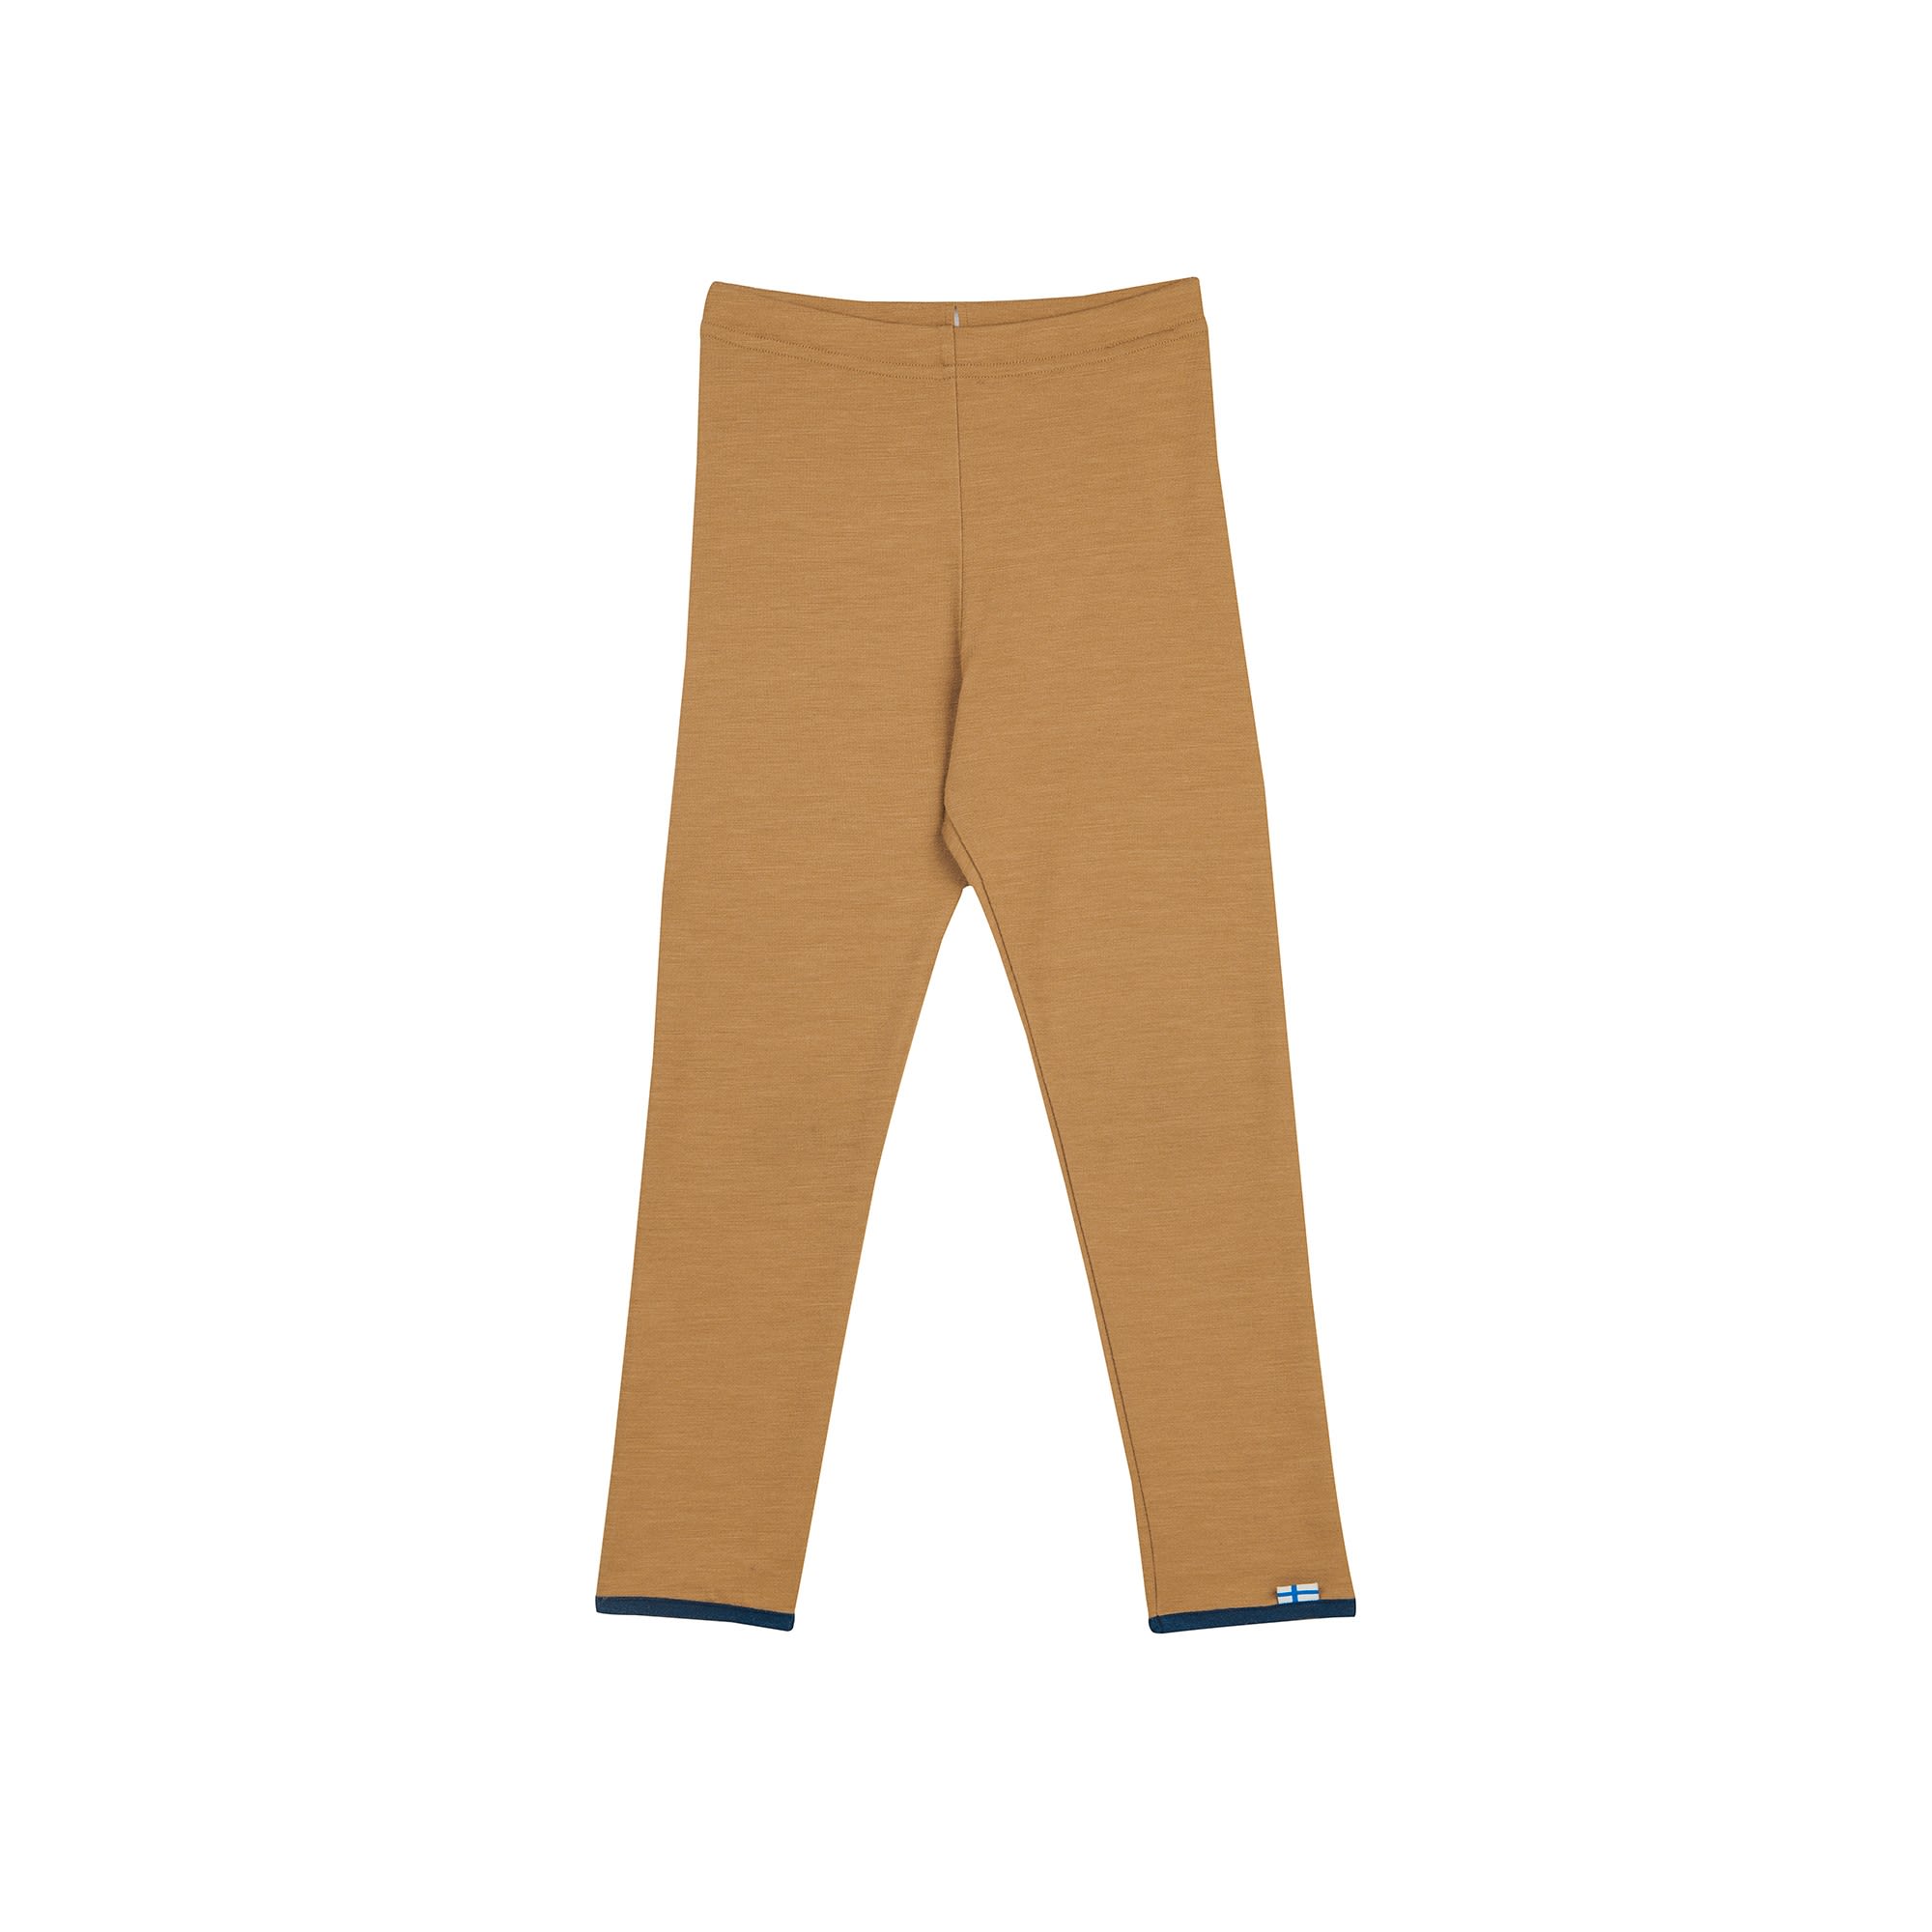 Finkid Leikki Wool (Vorgngermodell) Braun- Softshellhosen- Grsse 80 - 90 - Farbe Cinnamon - Navy